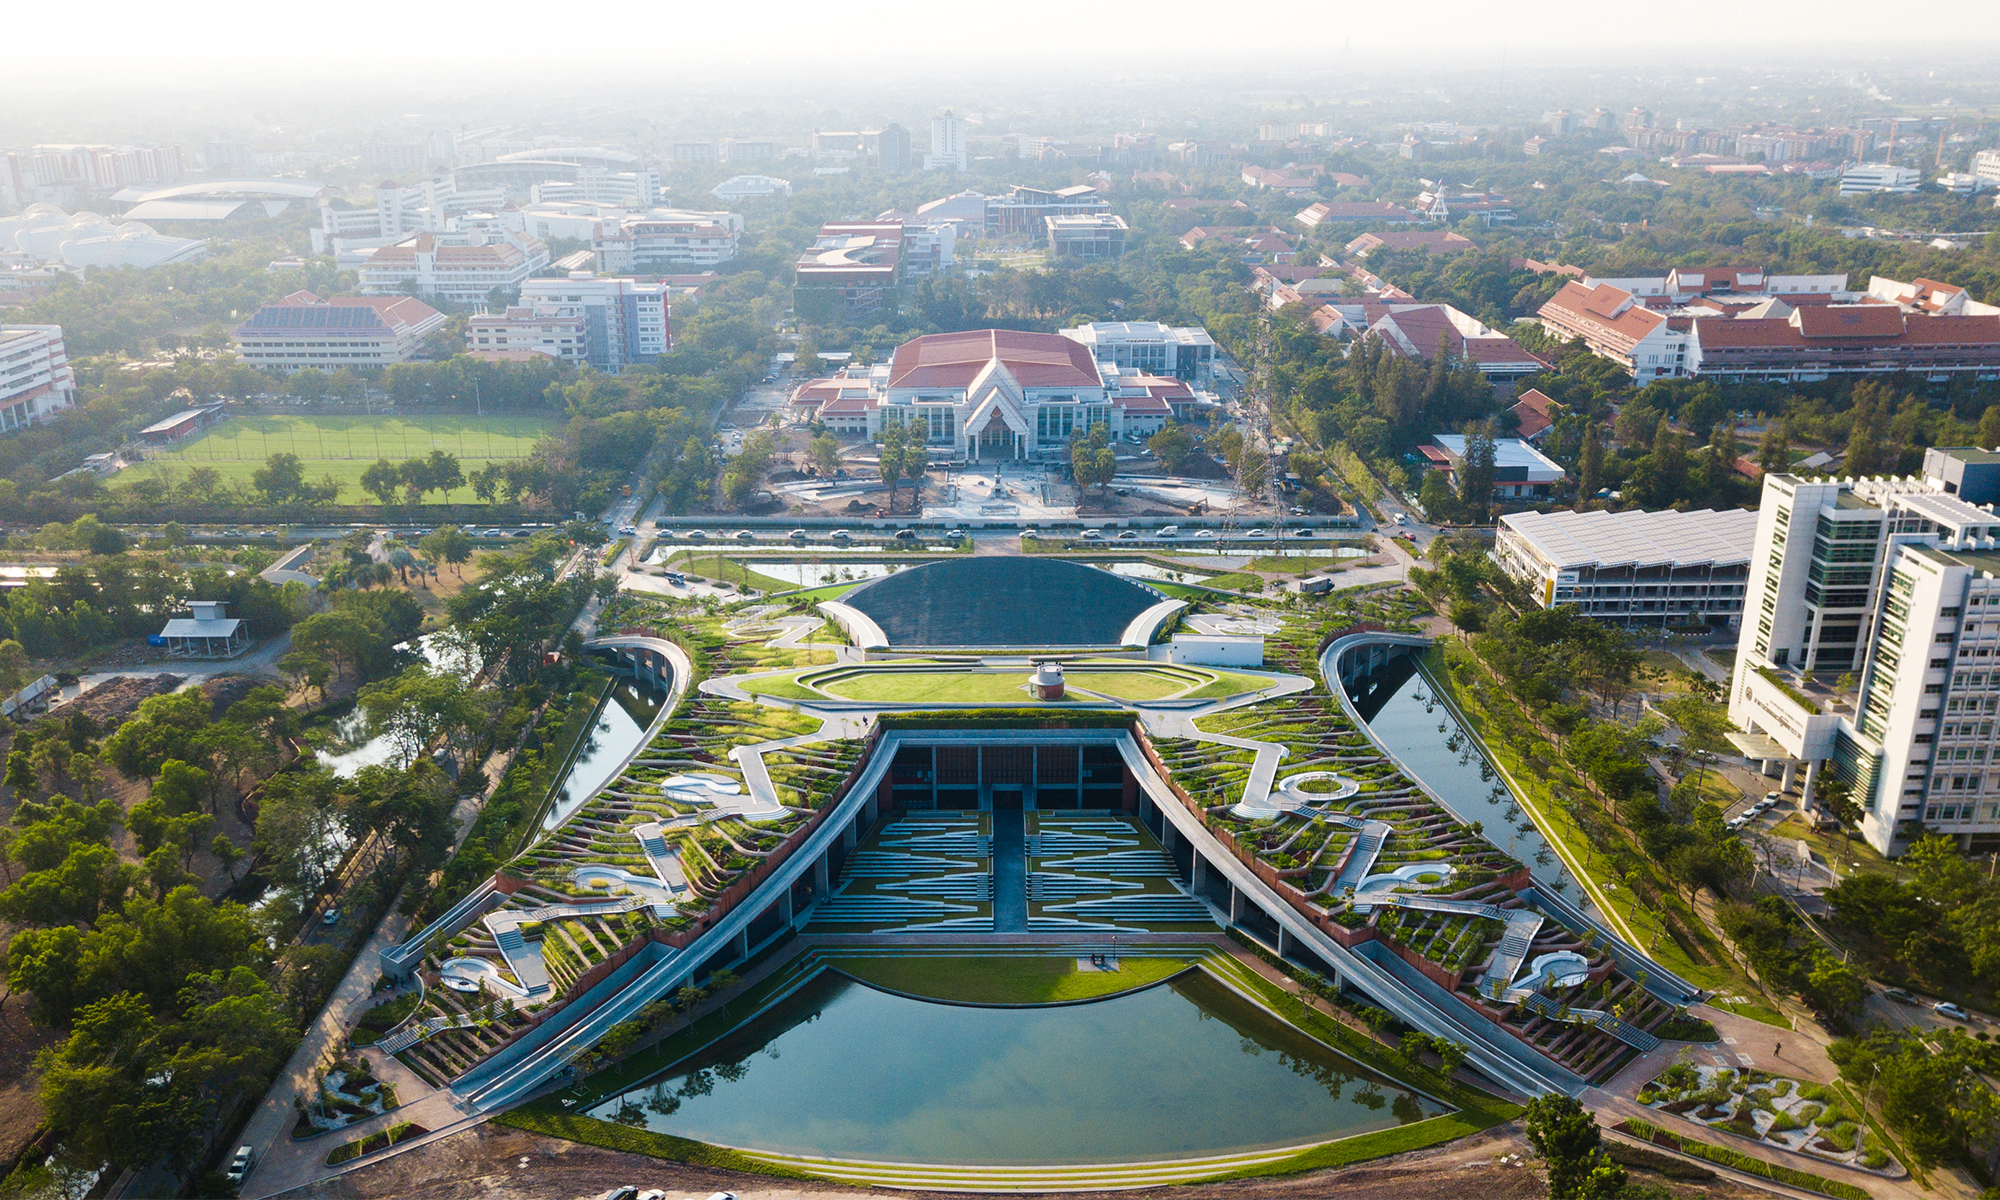 Urban university что это. Университет Таммасат Таиланд. Университет Таммасат городская ферма на крыше. Крыша университета. Ферма на кровле университета Таммасат.